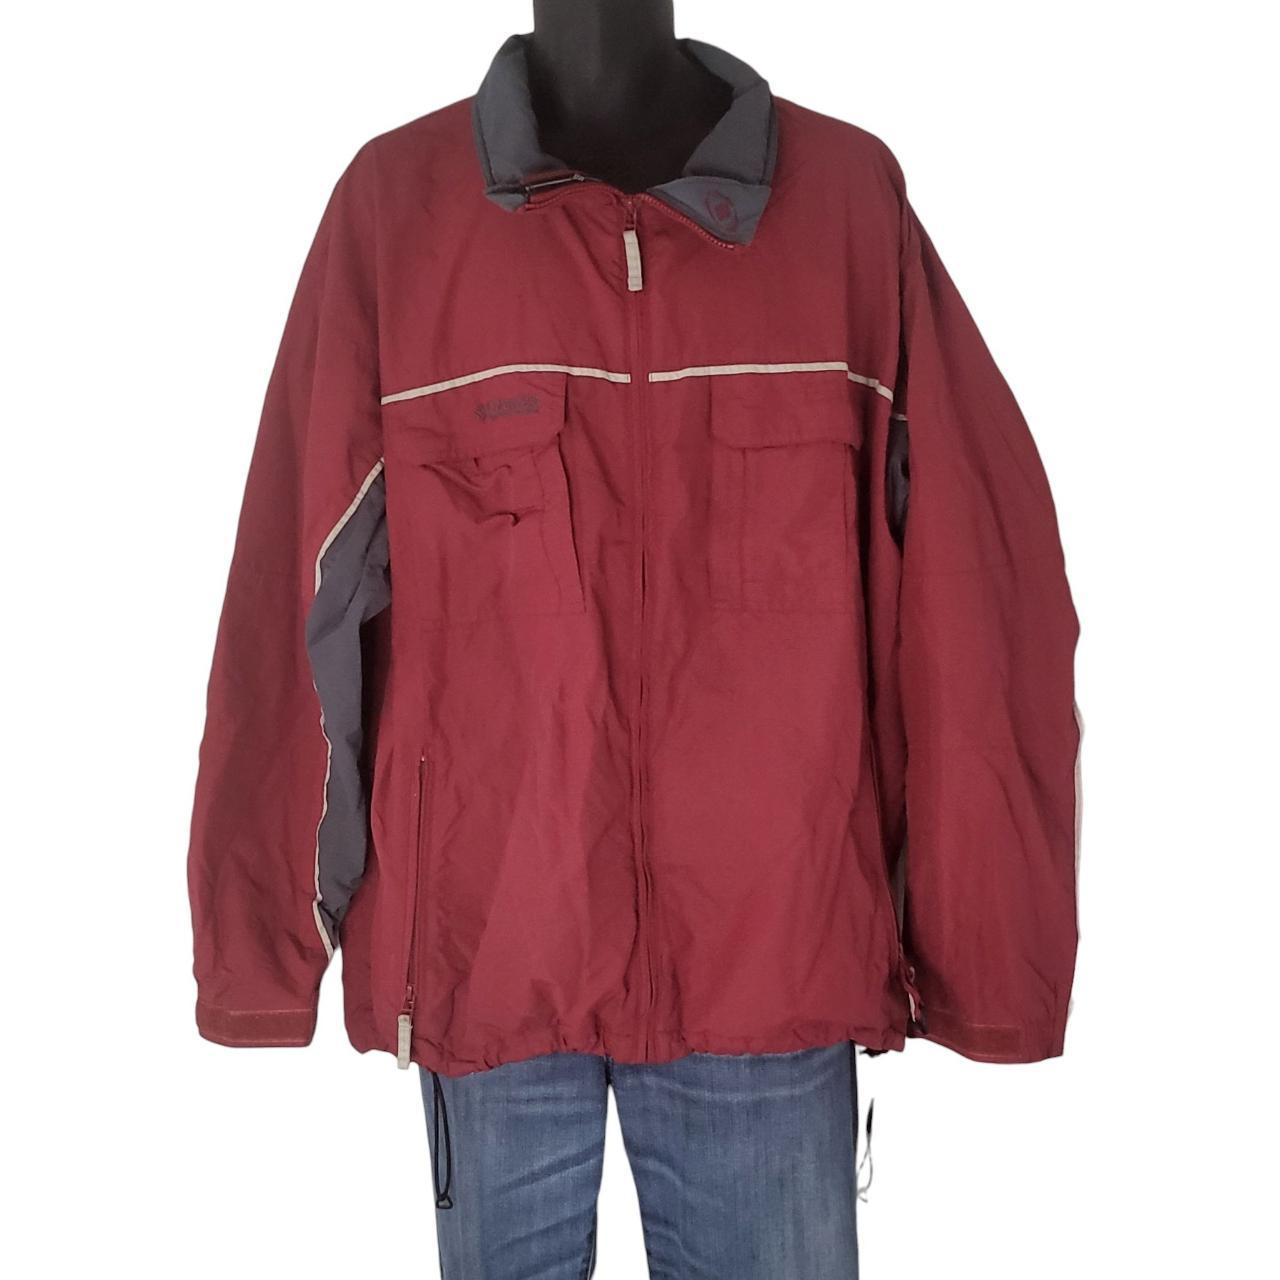 Columbia Sportswear Men's Jacket - Red - XL